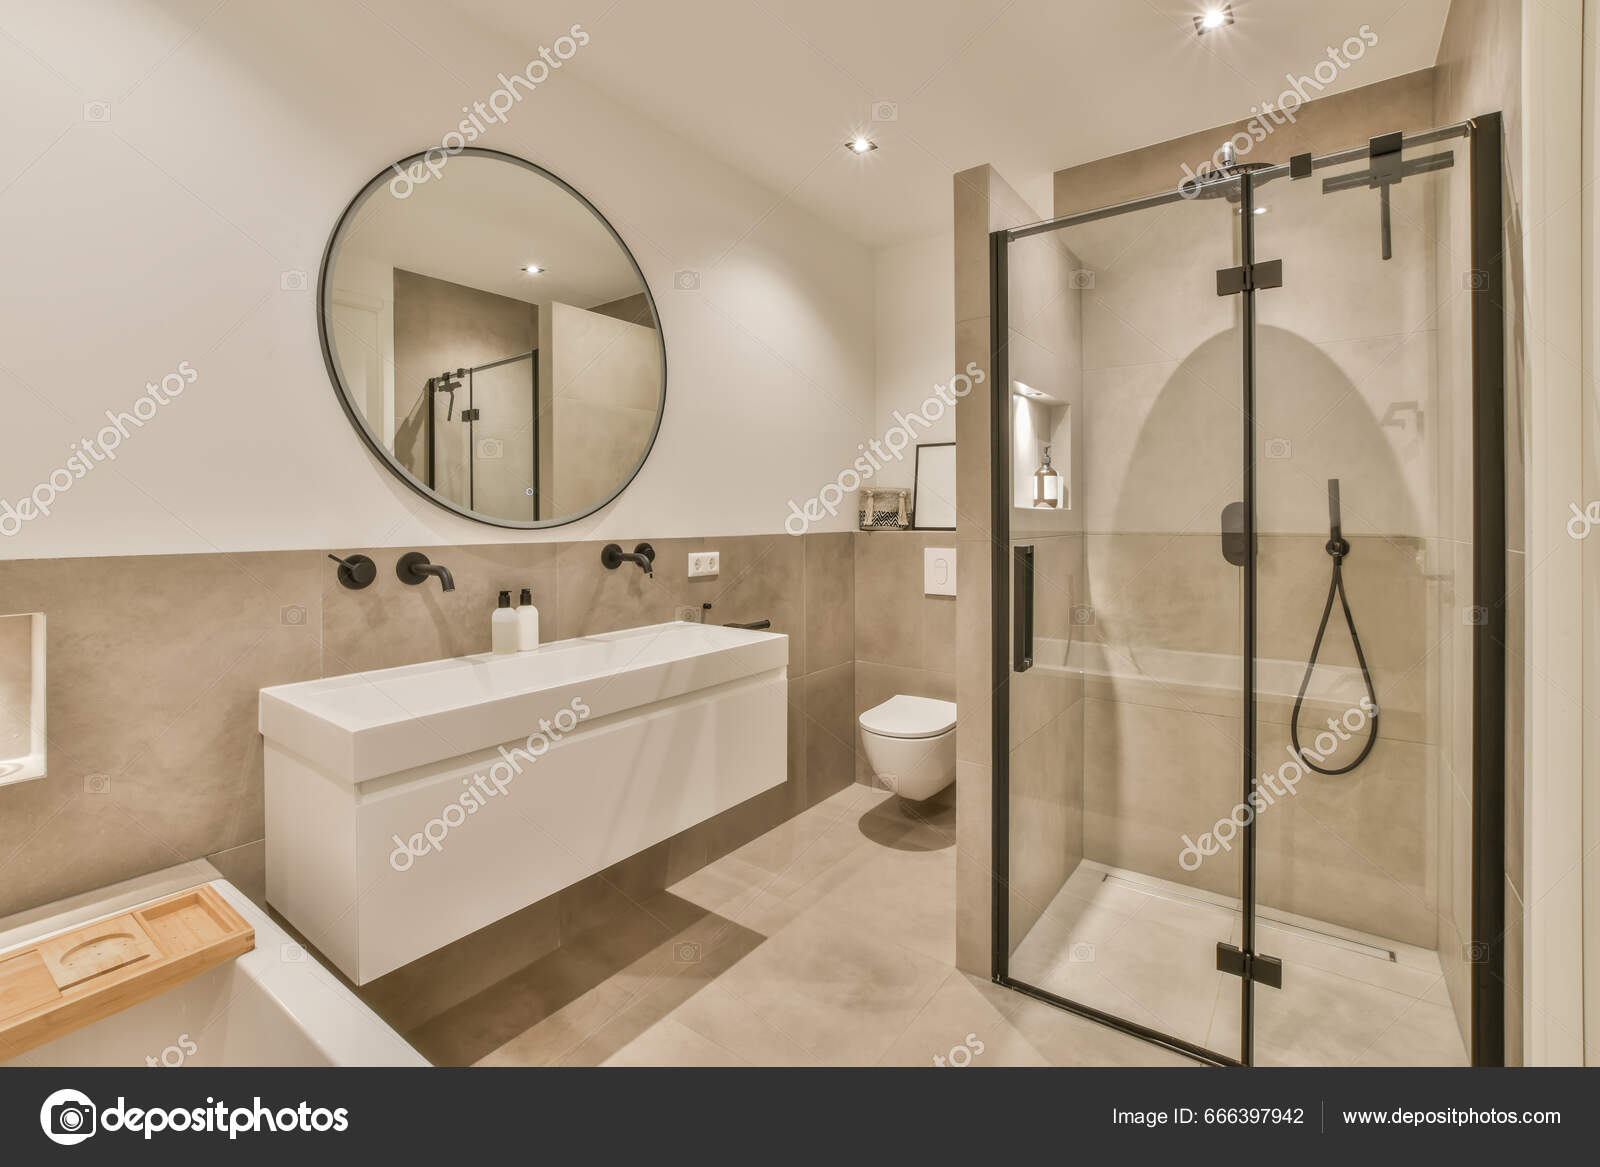 Ett Badrum Med Dusch Toalett Och Handfat Samma Färg Som — Stockfotografi ©  procontributors #666397942